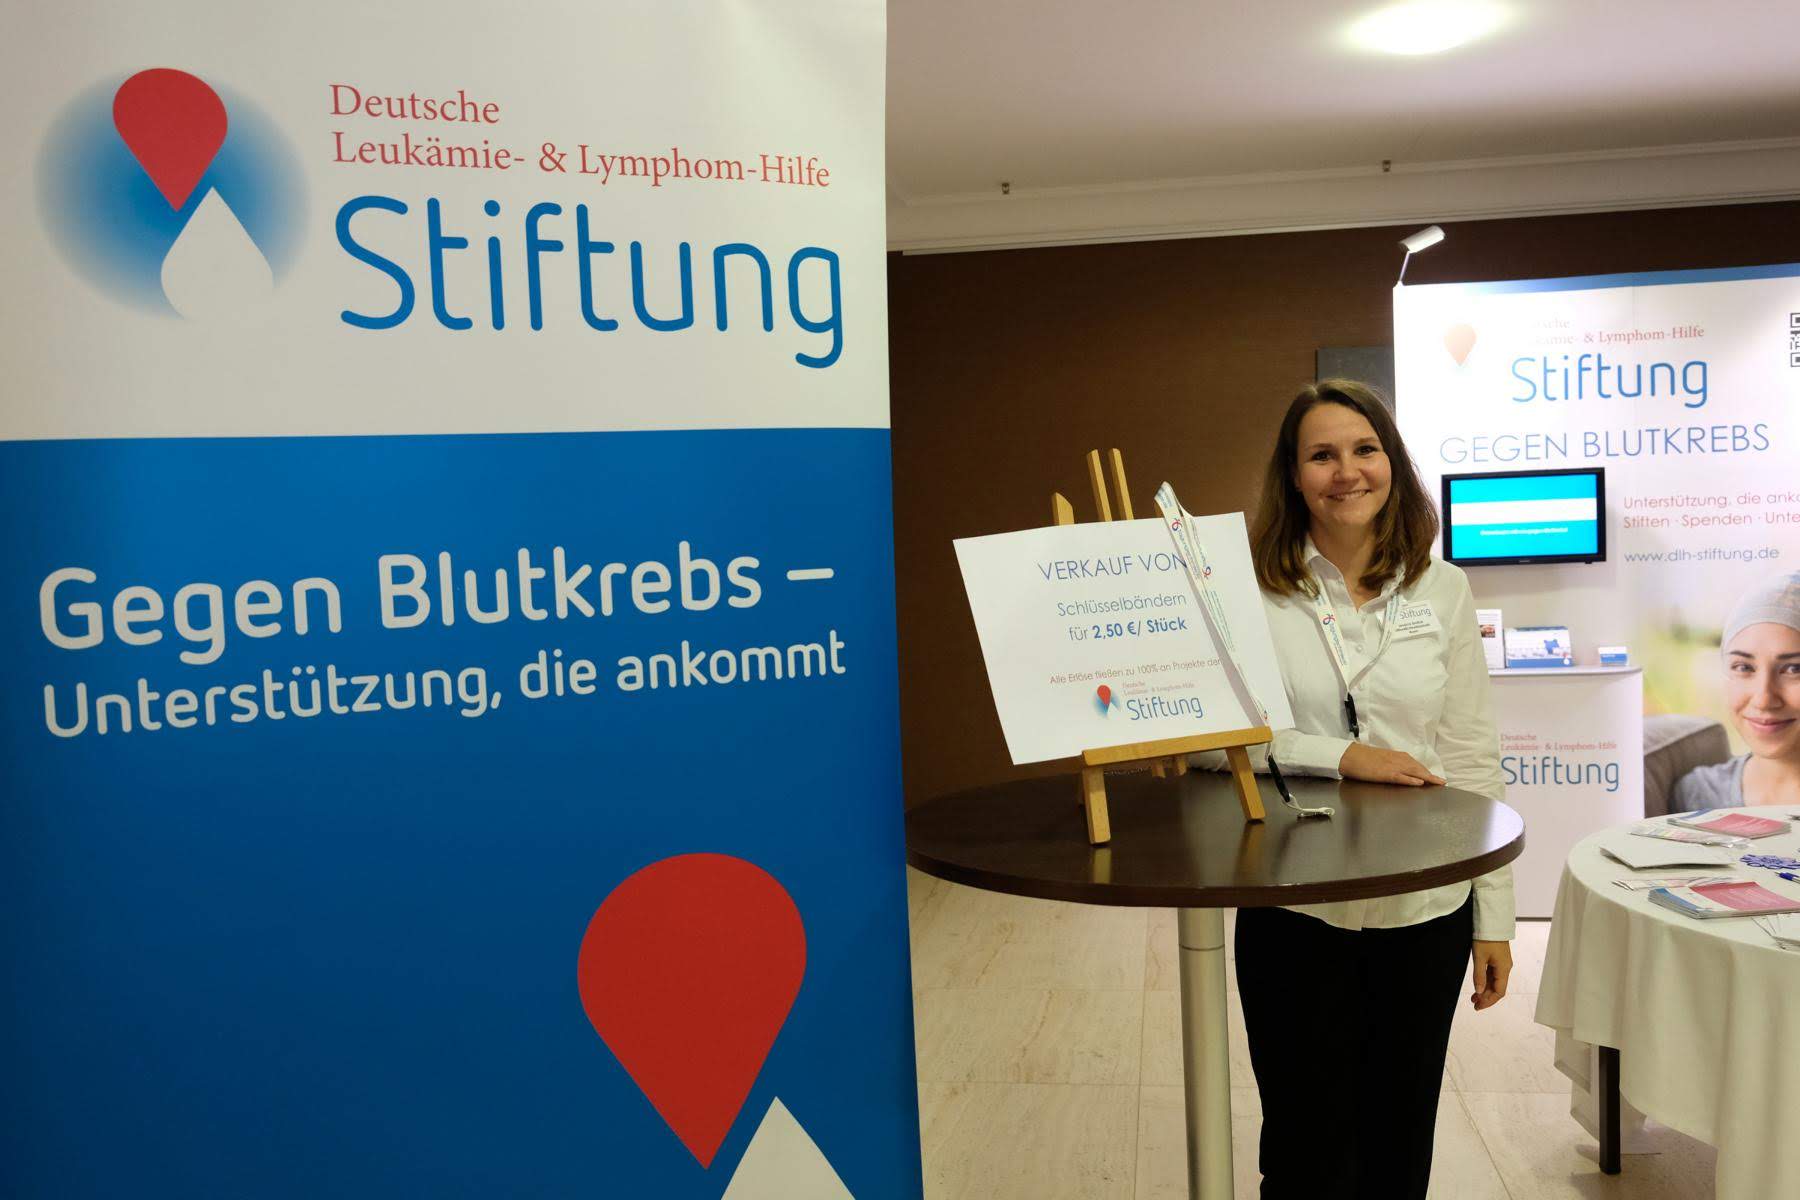 Seit November 2016 unterstützt Jessica Stoltze die Stiftung Deutsche Leukämie-& Lymphom-Hilfe in den Bereichen Fundraising, Presse- und Öffentlichkeitsarbeit sowie Veranstaltungen